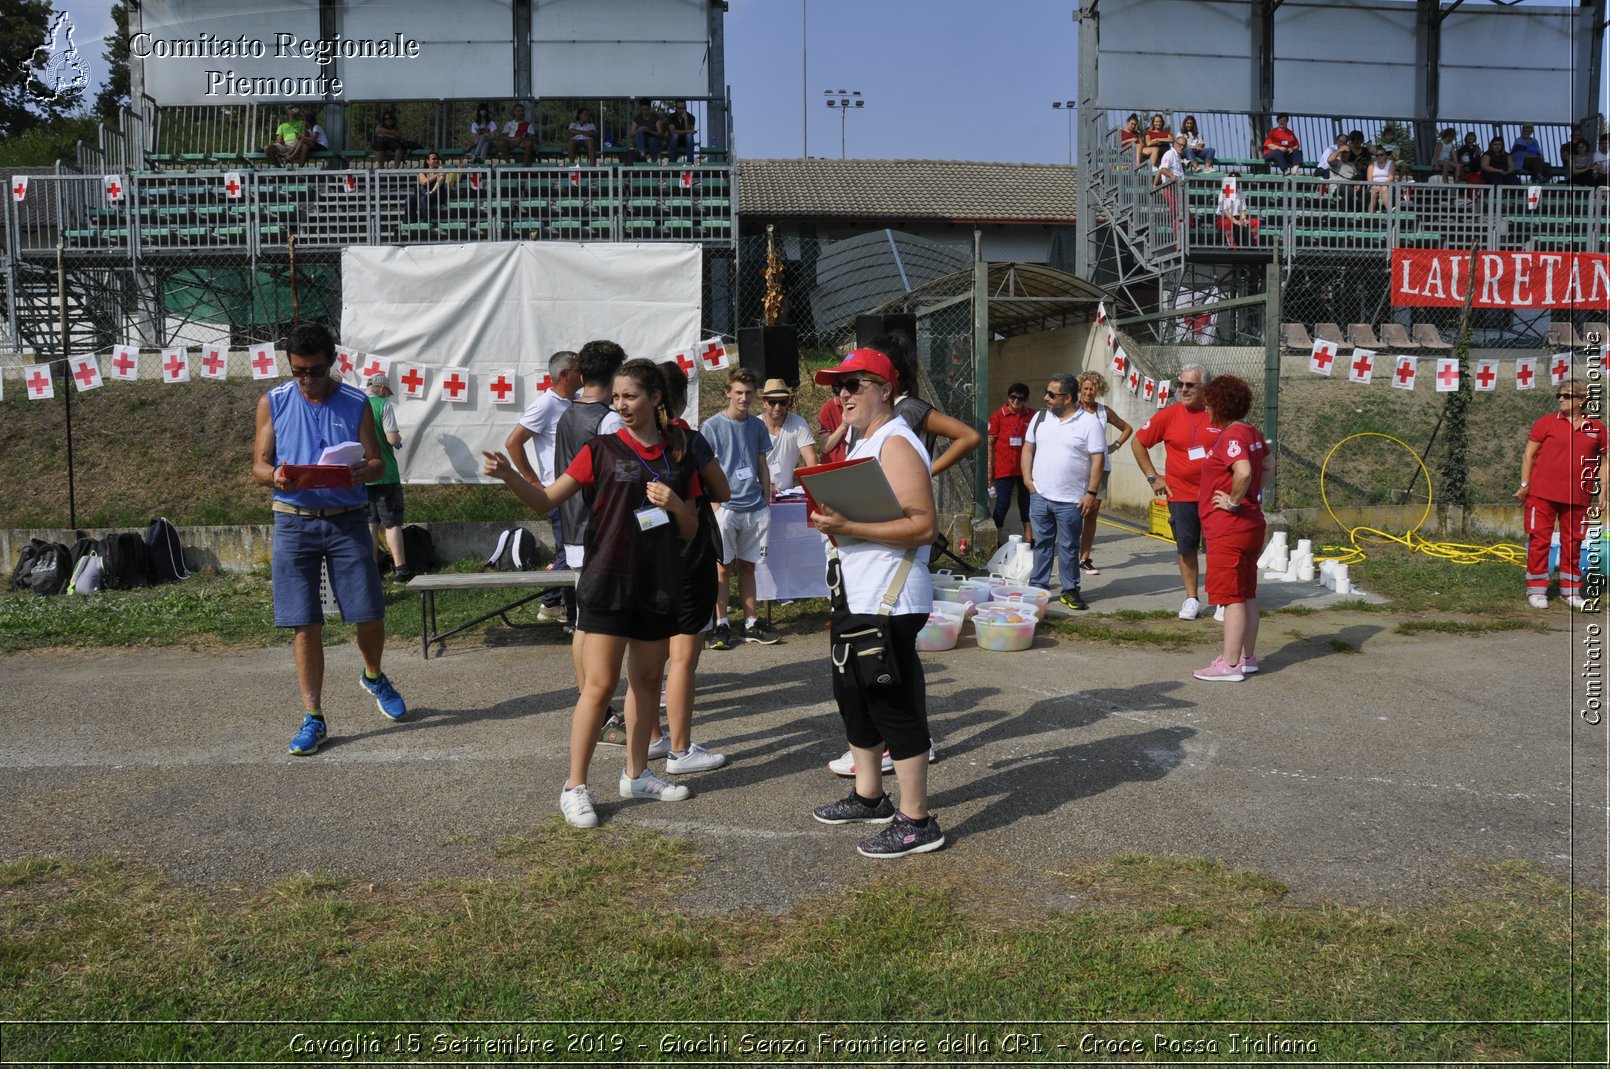 Cavagli 15 Settembre 2019 - Giochi Senza Frontiere della CRI - Croce Rossa Italiana